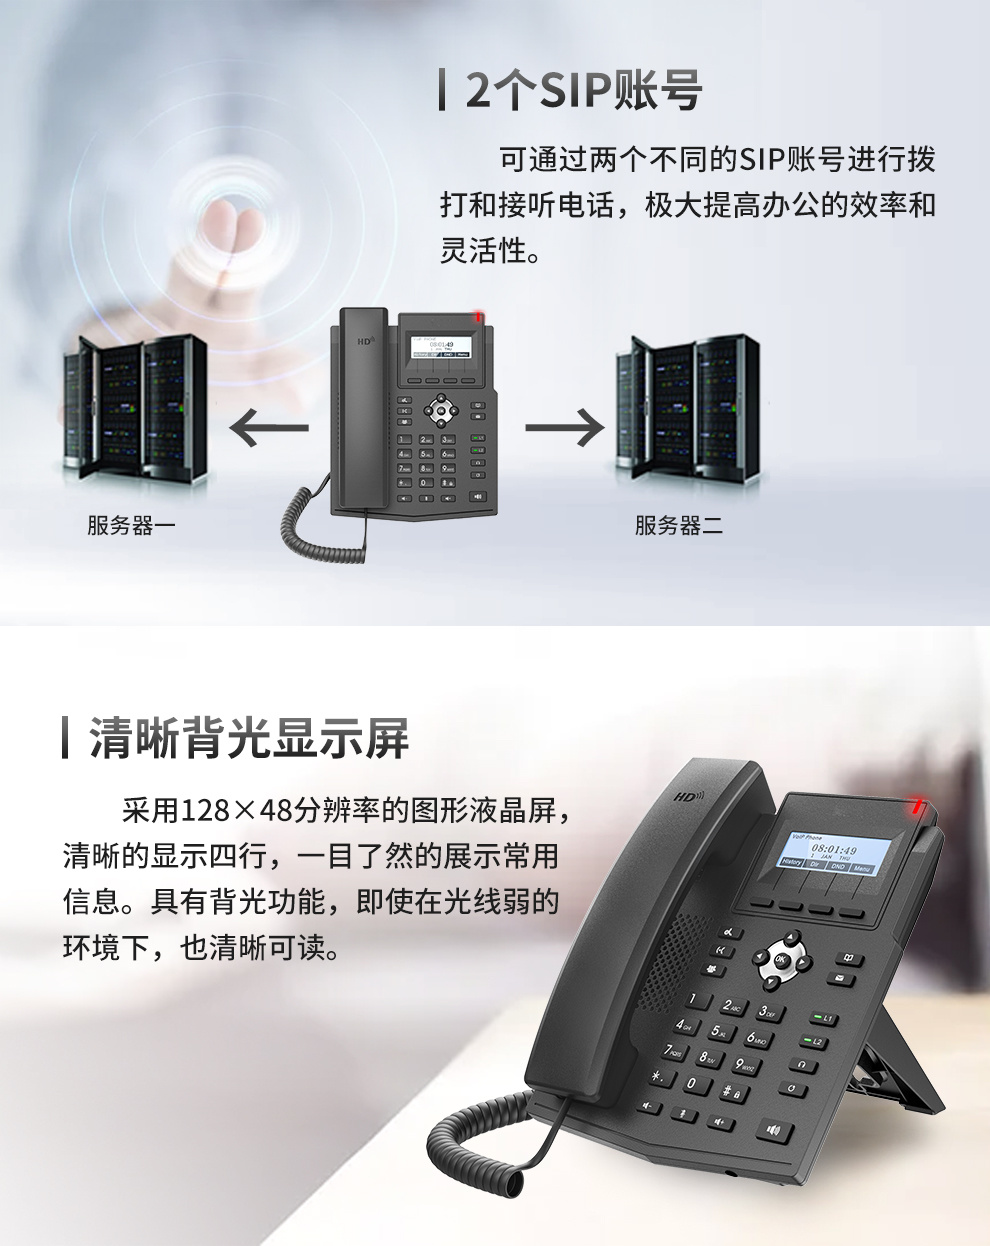 恒捷HJ-C500Z入门级IP电话机 桌面电话机 网络VOIP电话机 呼叫中心电话机 办公座机 IPPBX电话机示例图3